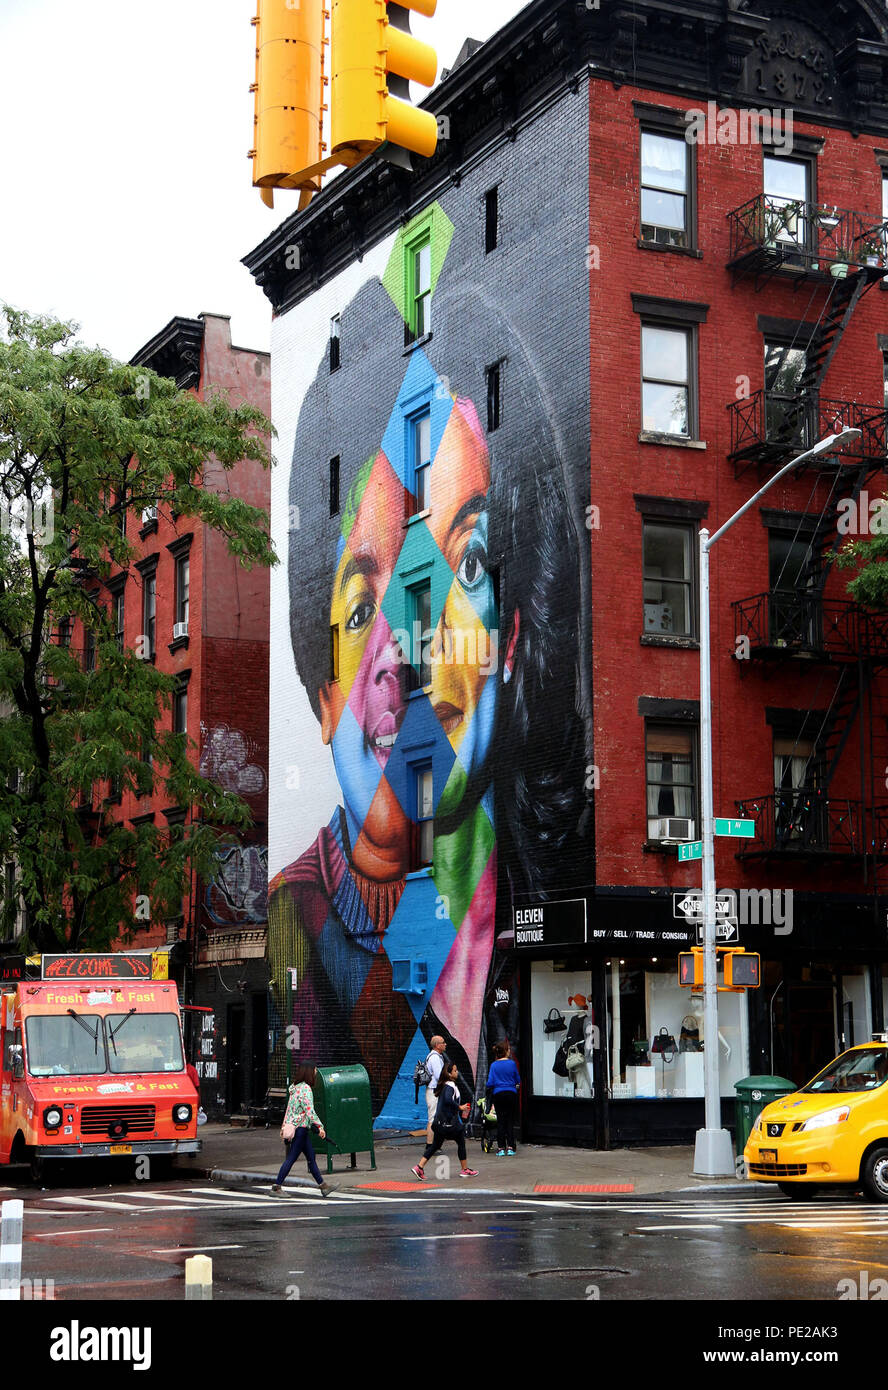 Kobra faz mural em homenagem a Michael Jackson em Nova York - A Rádio Rock  - 89,1 FM - SP